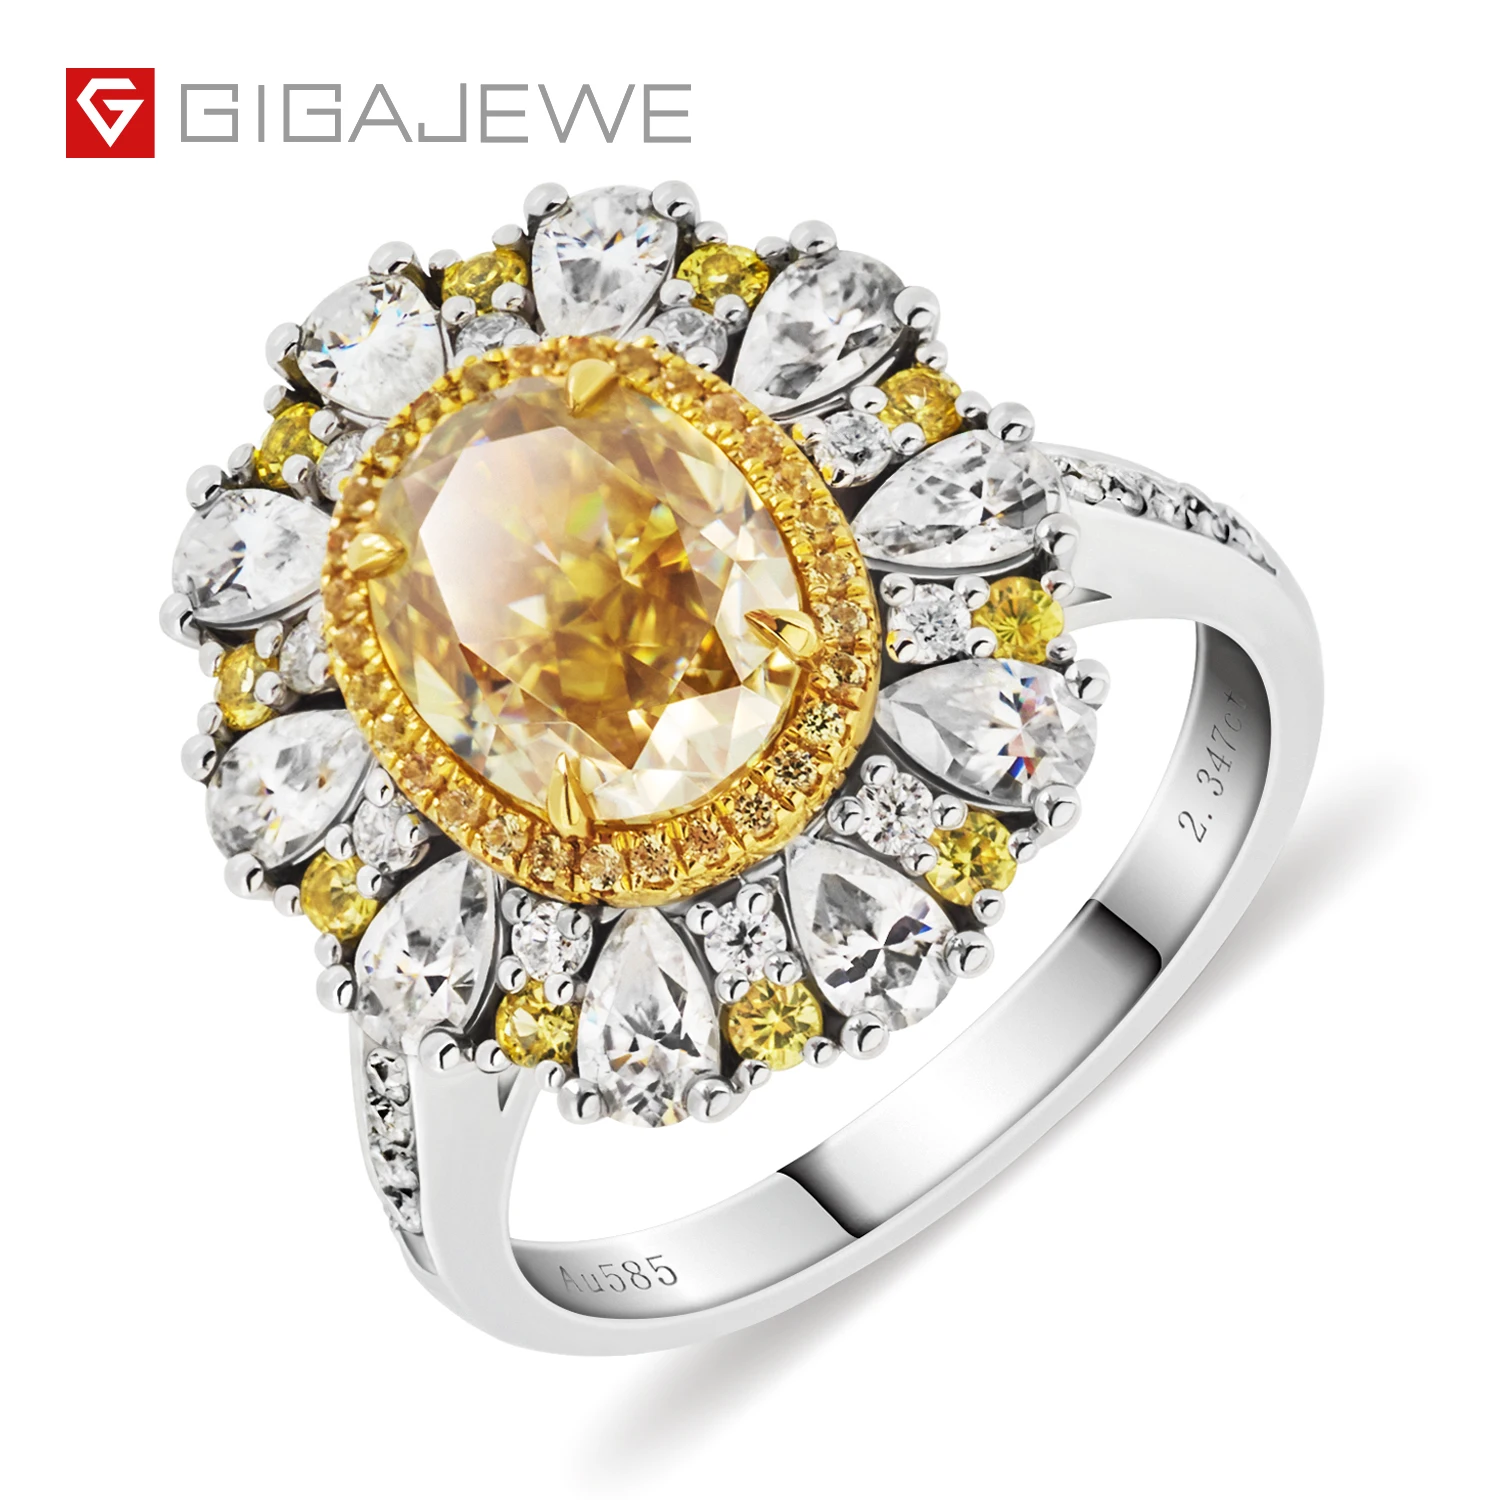 

GIGAJEWE Customize Jewelry 9k/14k/18k gold ring moissanite gemstone ring women for wedding rings halo engagement ring